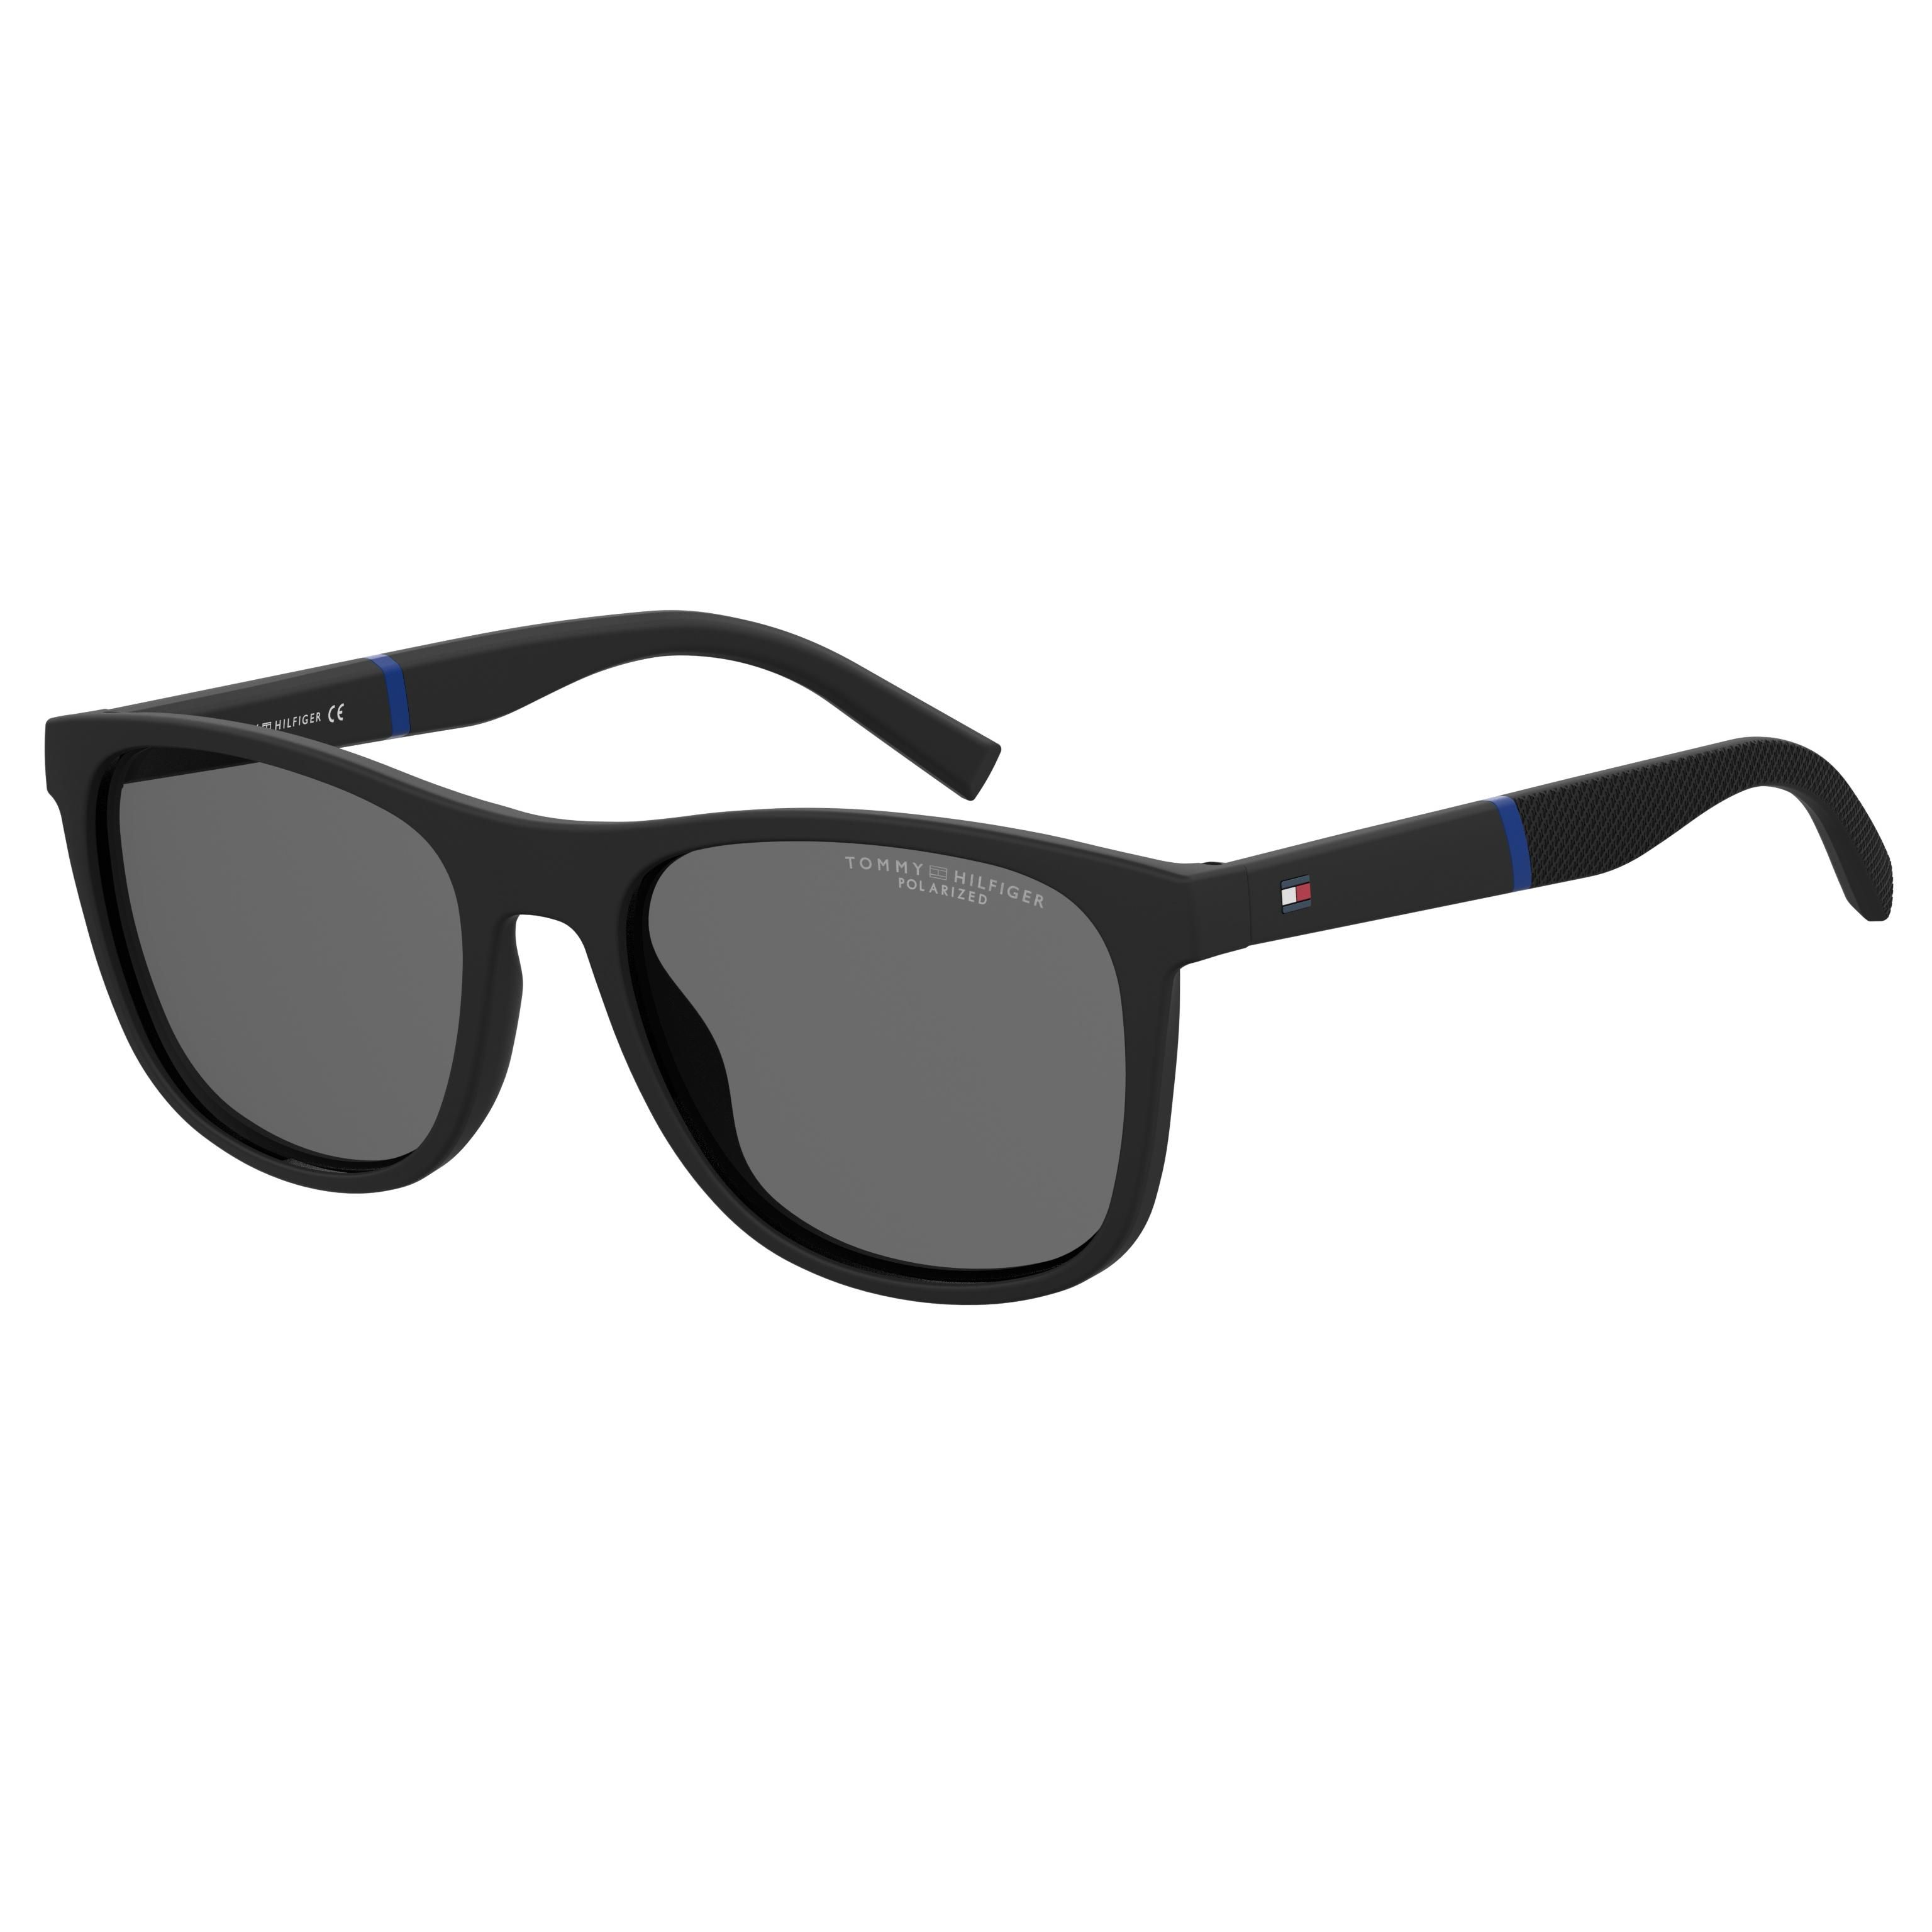 TH 2042 S Square Sunglasses 003 - size 54